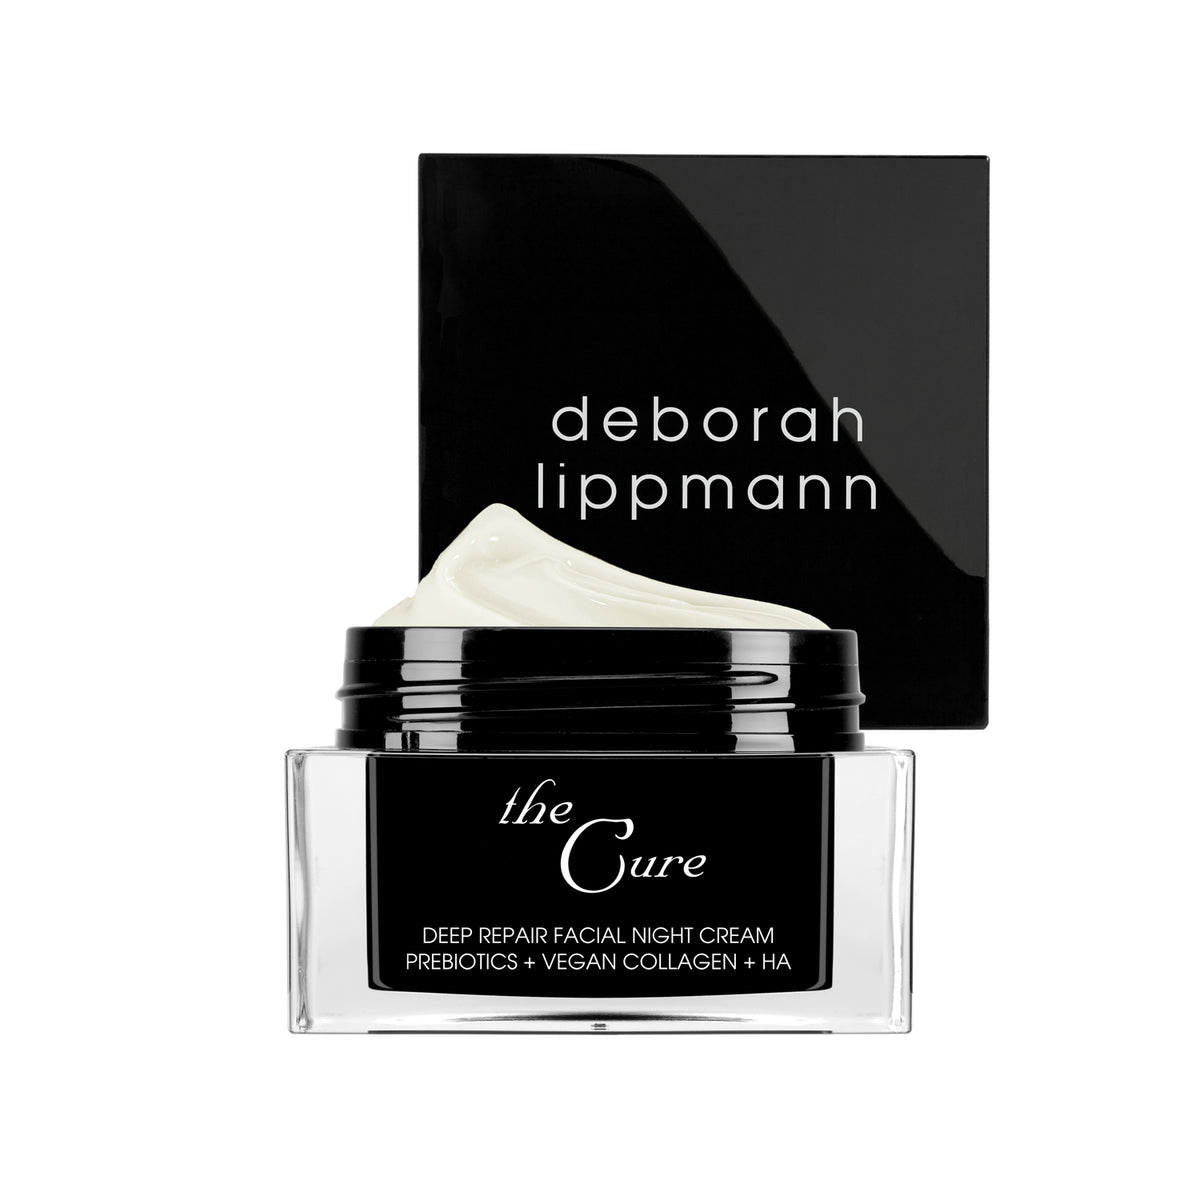 The Cure - Deep Repair Facial Night Cream - Deborah Lippmann